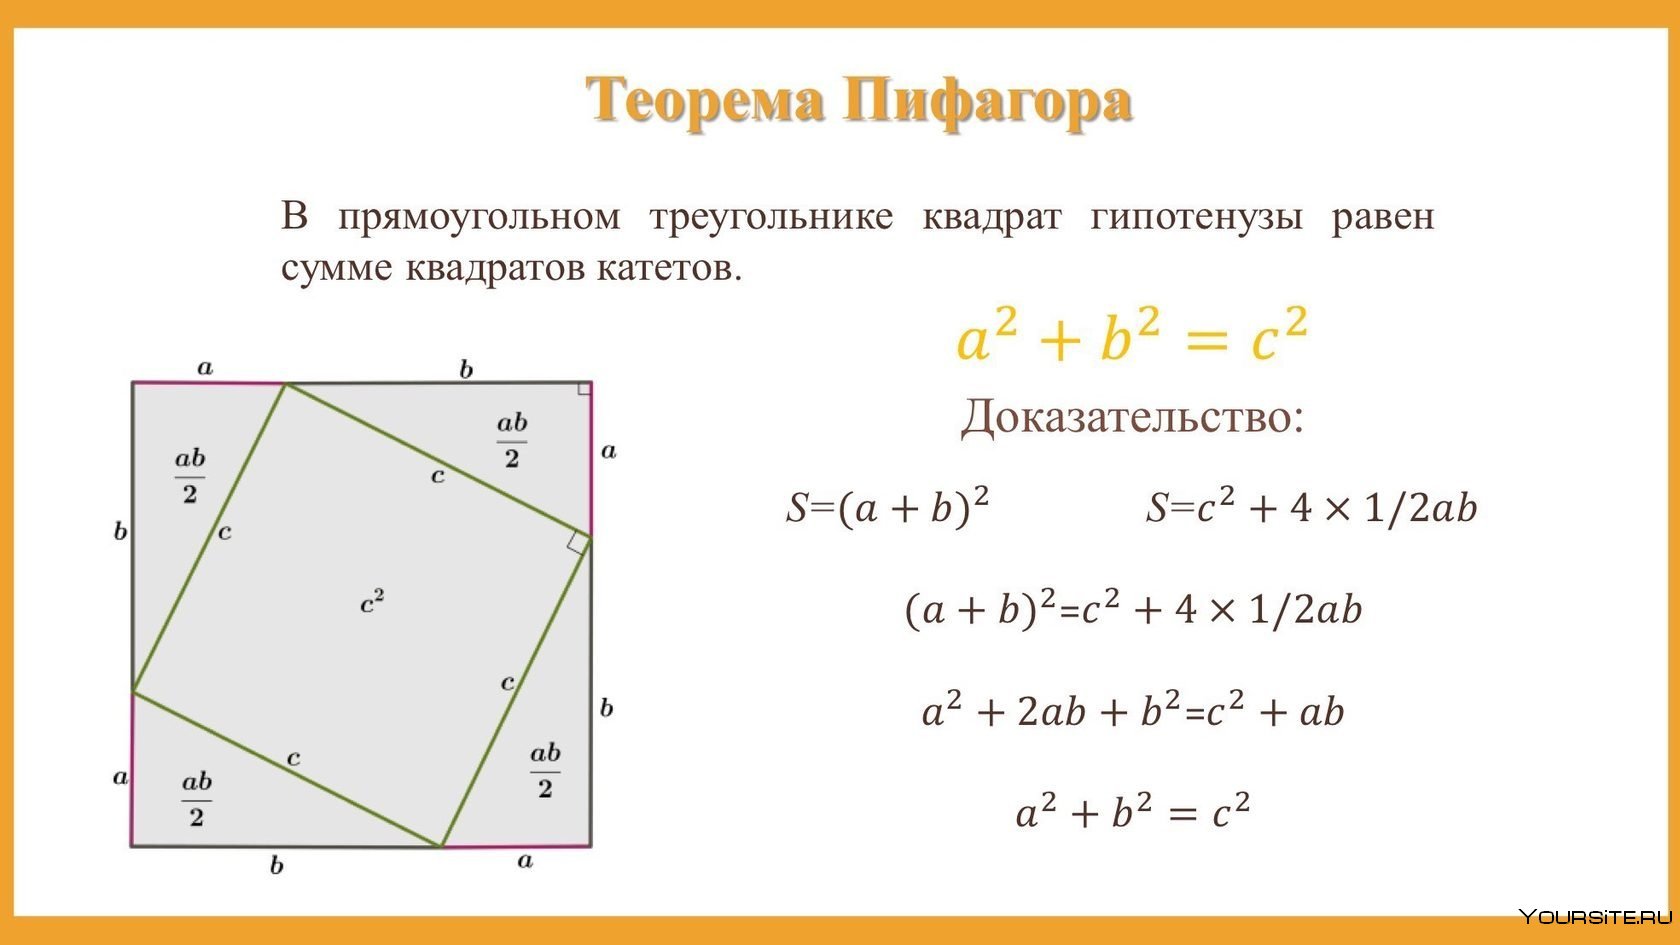 Теорема Пифагора формула кв